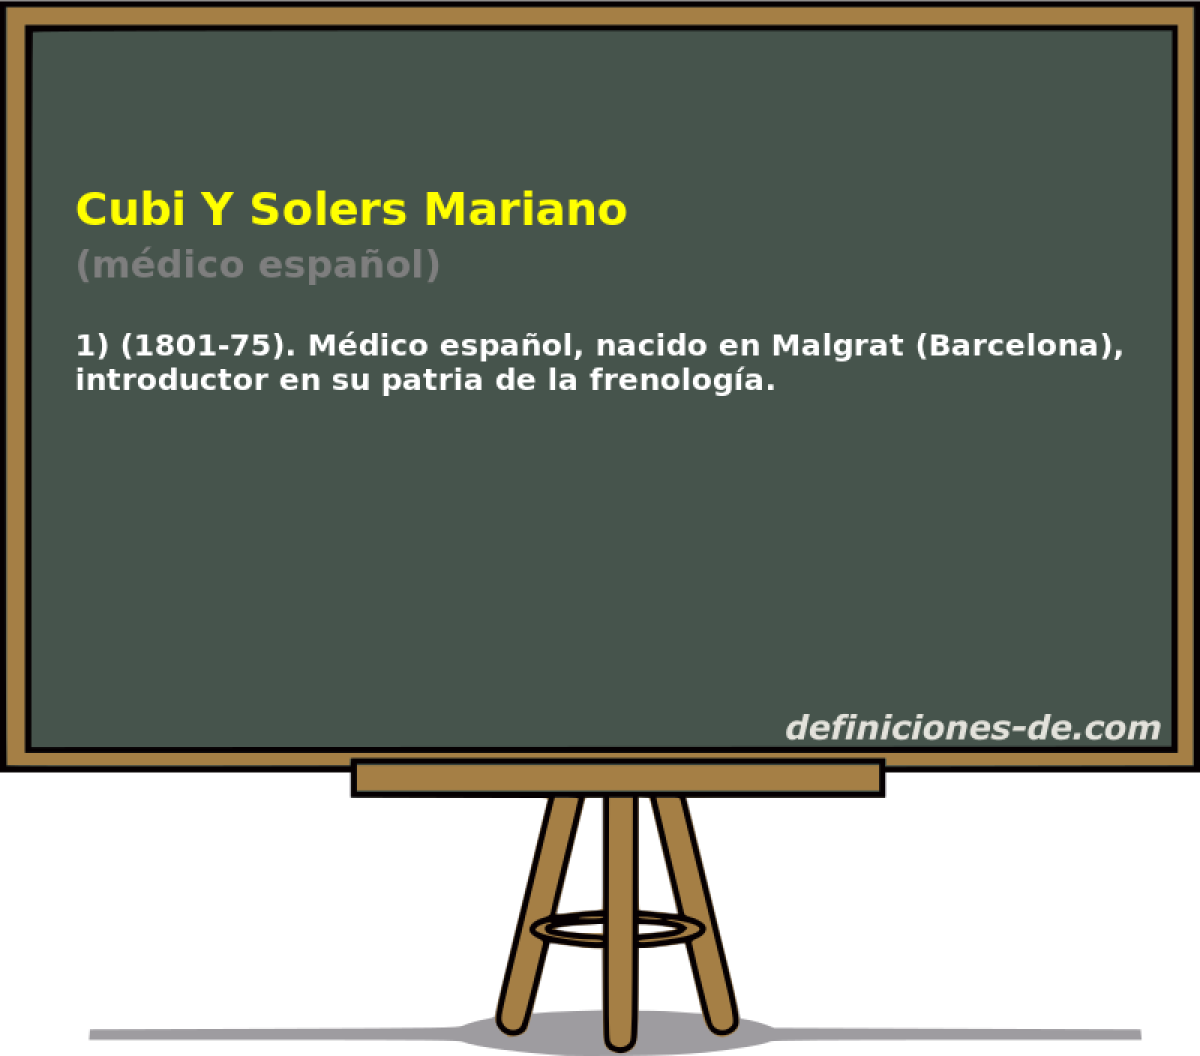 Cubi Y Solers Mariano (mdico espaol)